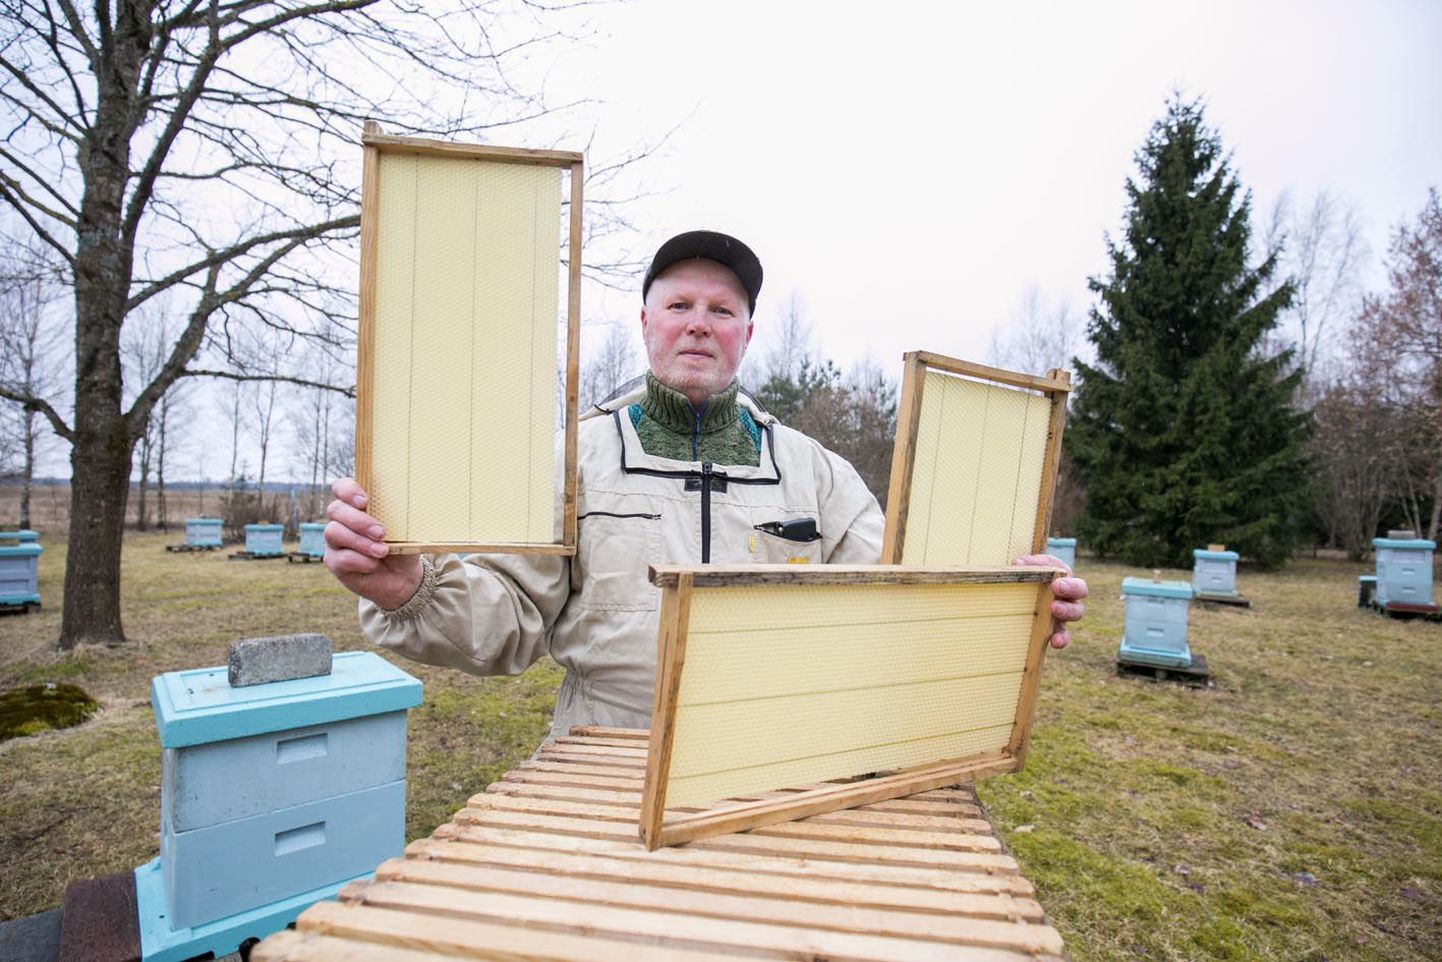 Aastakümneid Koeru vallas mesinikuna tegutsenud Lembit Liin näitab tarudesse pandavaid kärgi, mida mahub ühte tarusse kümme. See on üks töödest, mida mesinik peab jõudma ära teha enne mesila välihooaja algust.